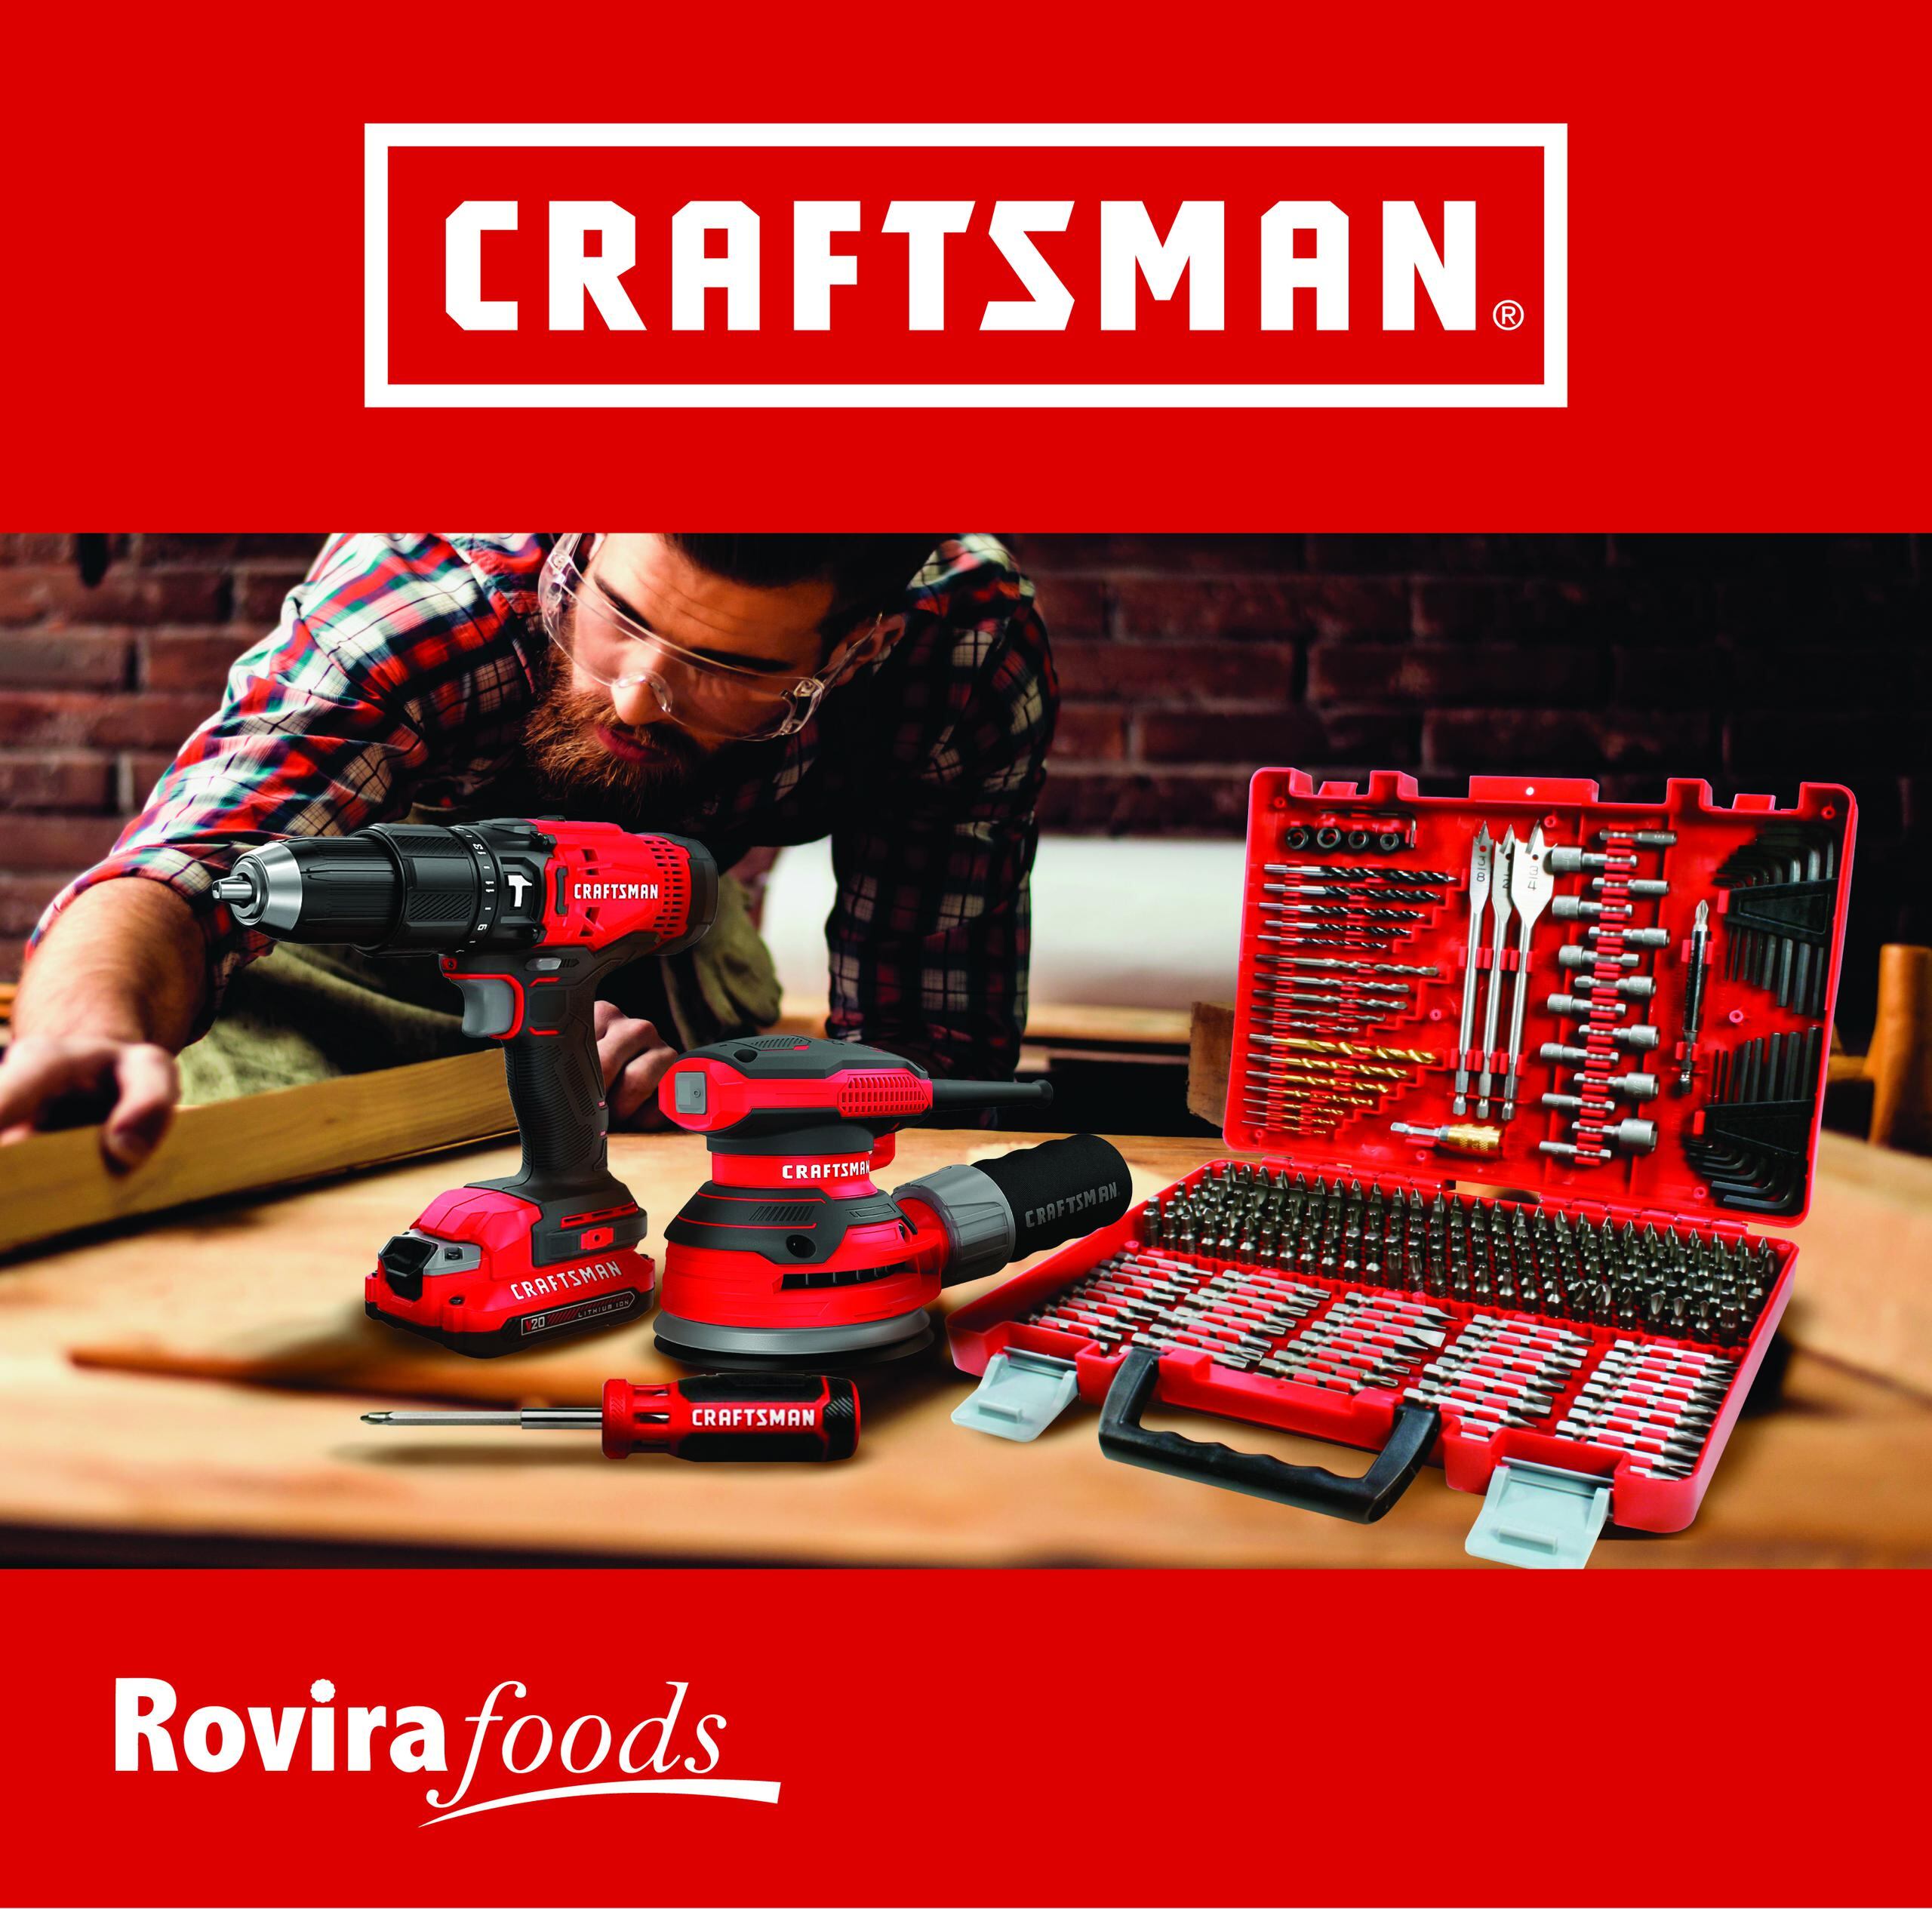 Craftsman es un ícono por su calidad y la garantía de sus productos.